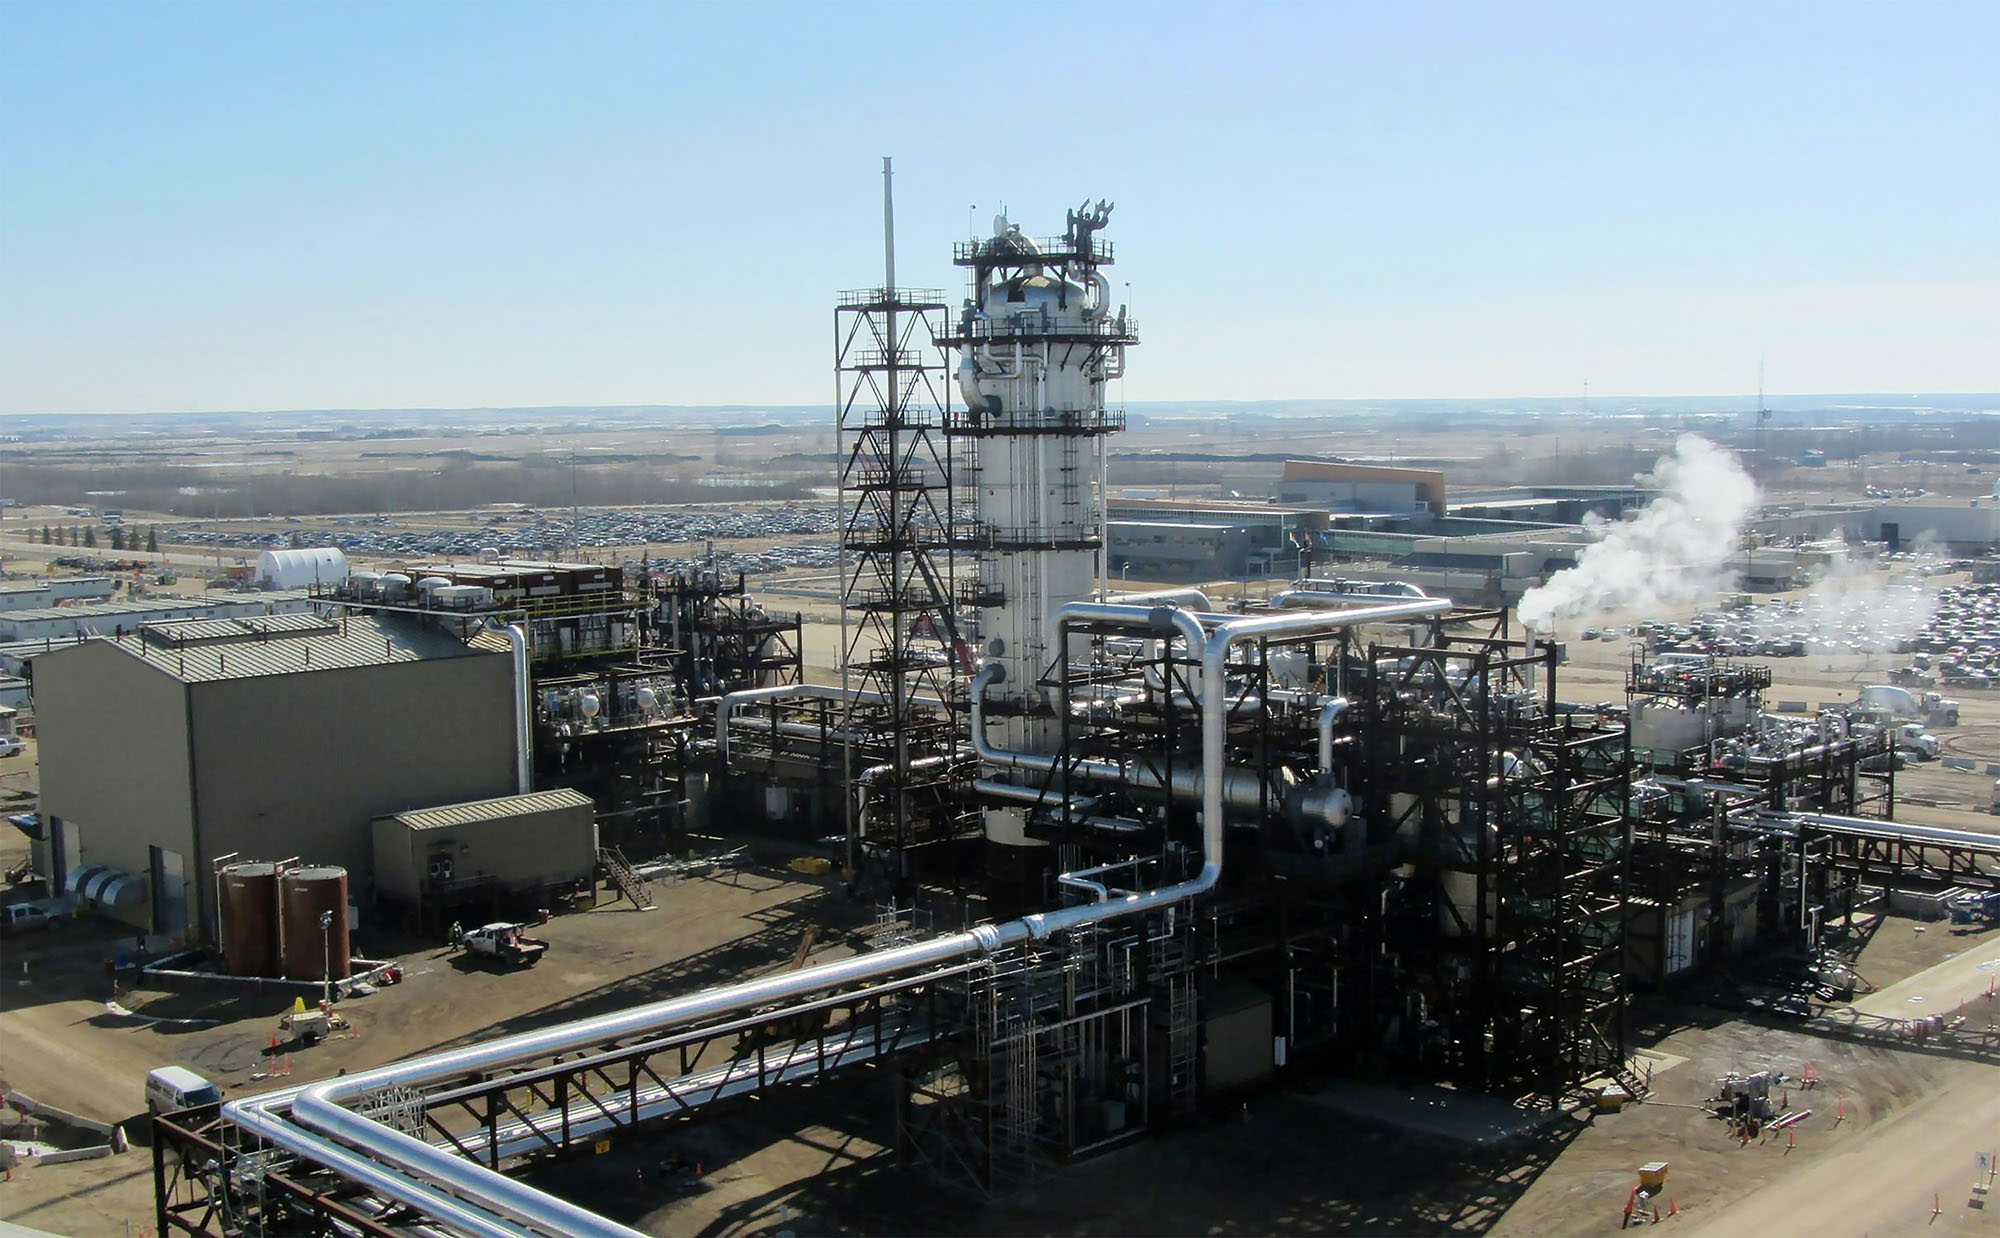 Kanada Alberta probintzian bioenergian oinarrituriko zentral elektrikoa. Ekoizpen horrek 